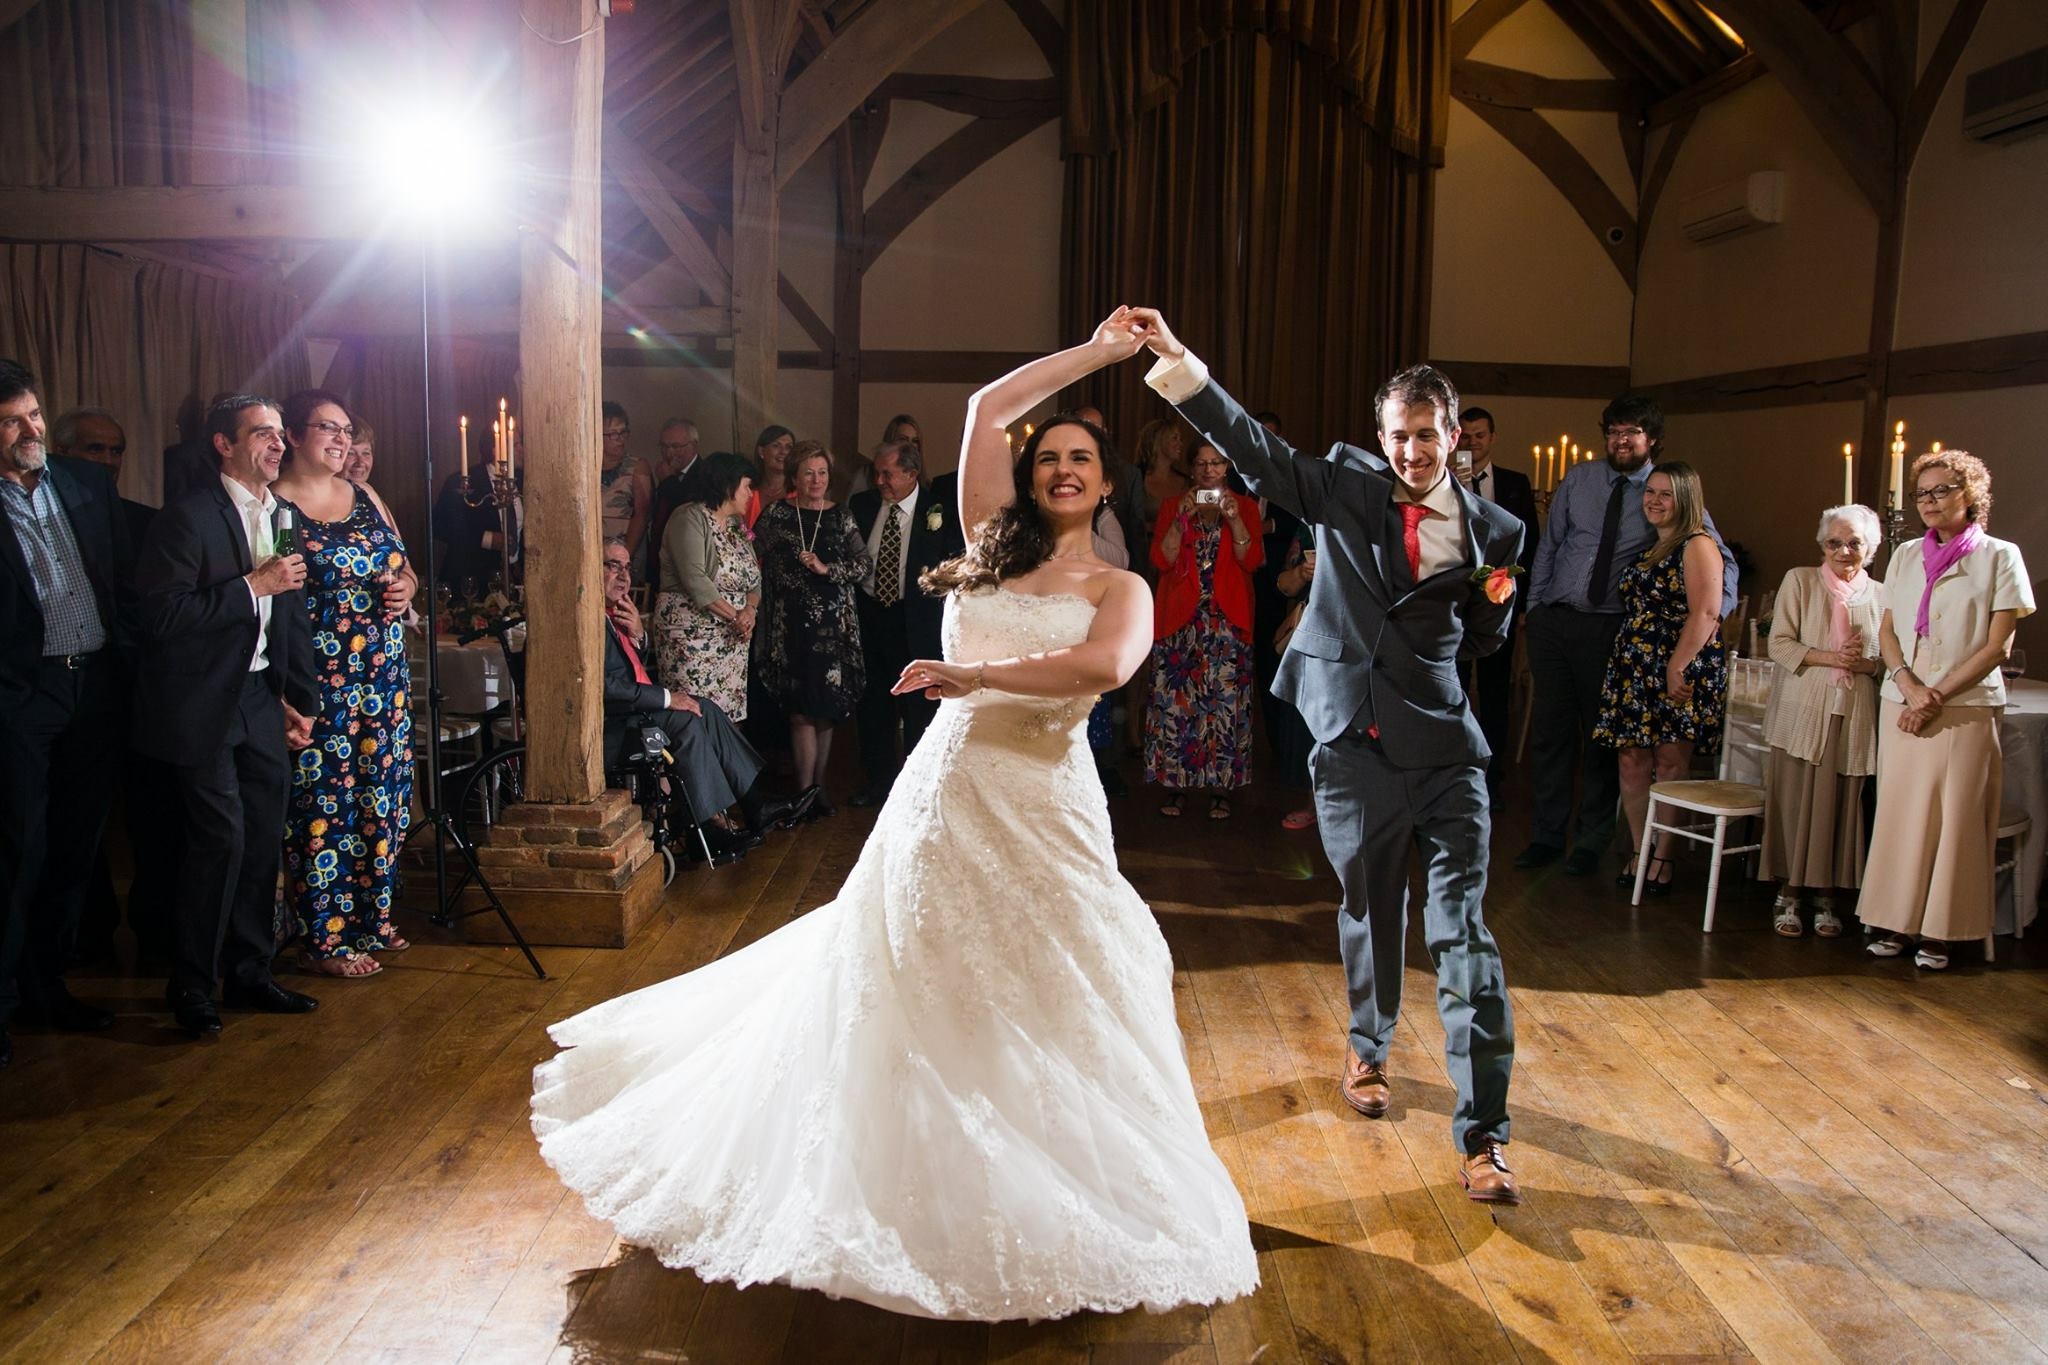 RMW Rates - Wedding Day Dance UK - ROCK MY WEDDING | UK WEDDING BLOG ...